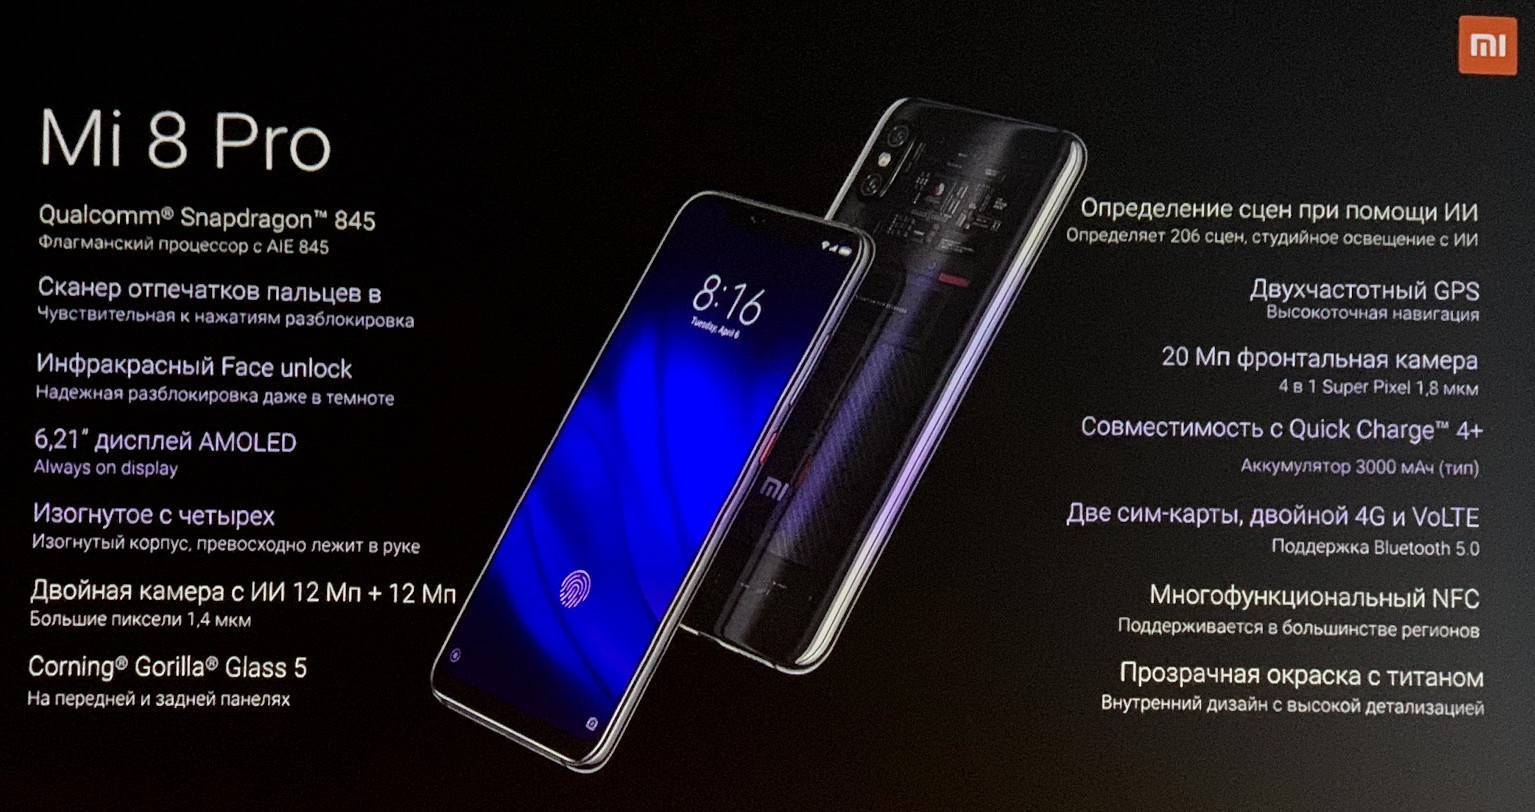 Обзор xiaomi mi 6x - новый смартфон с вертикальной камерой - 4apk